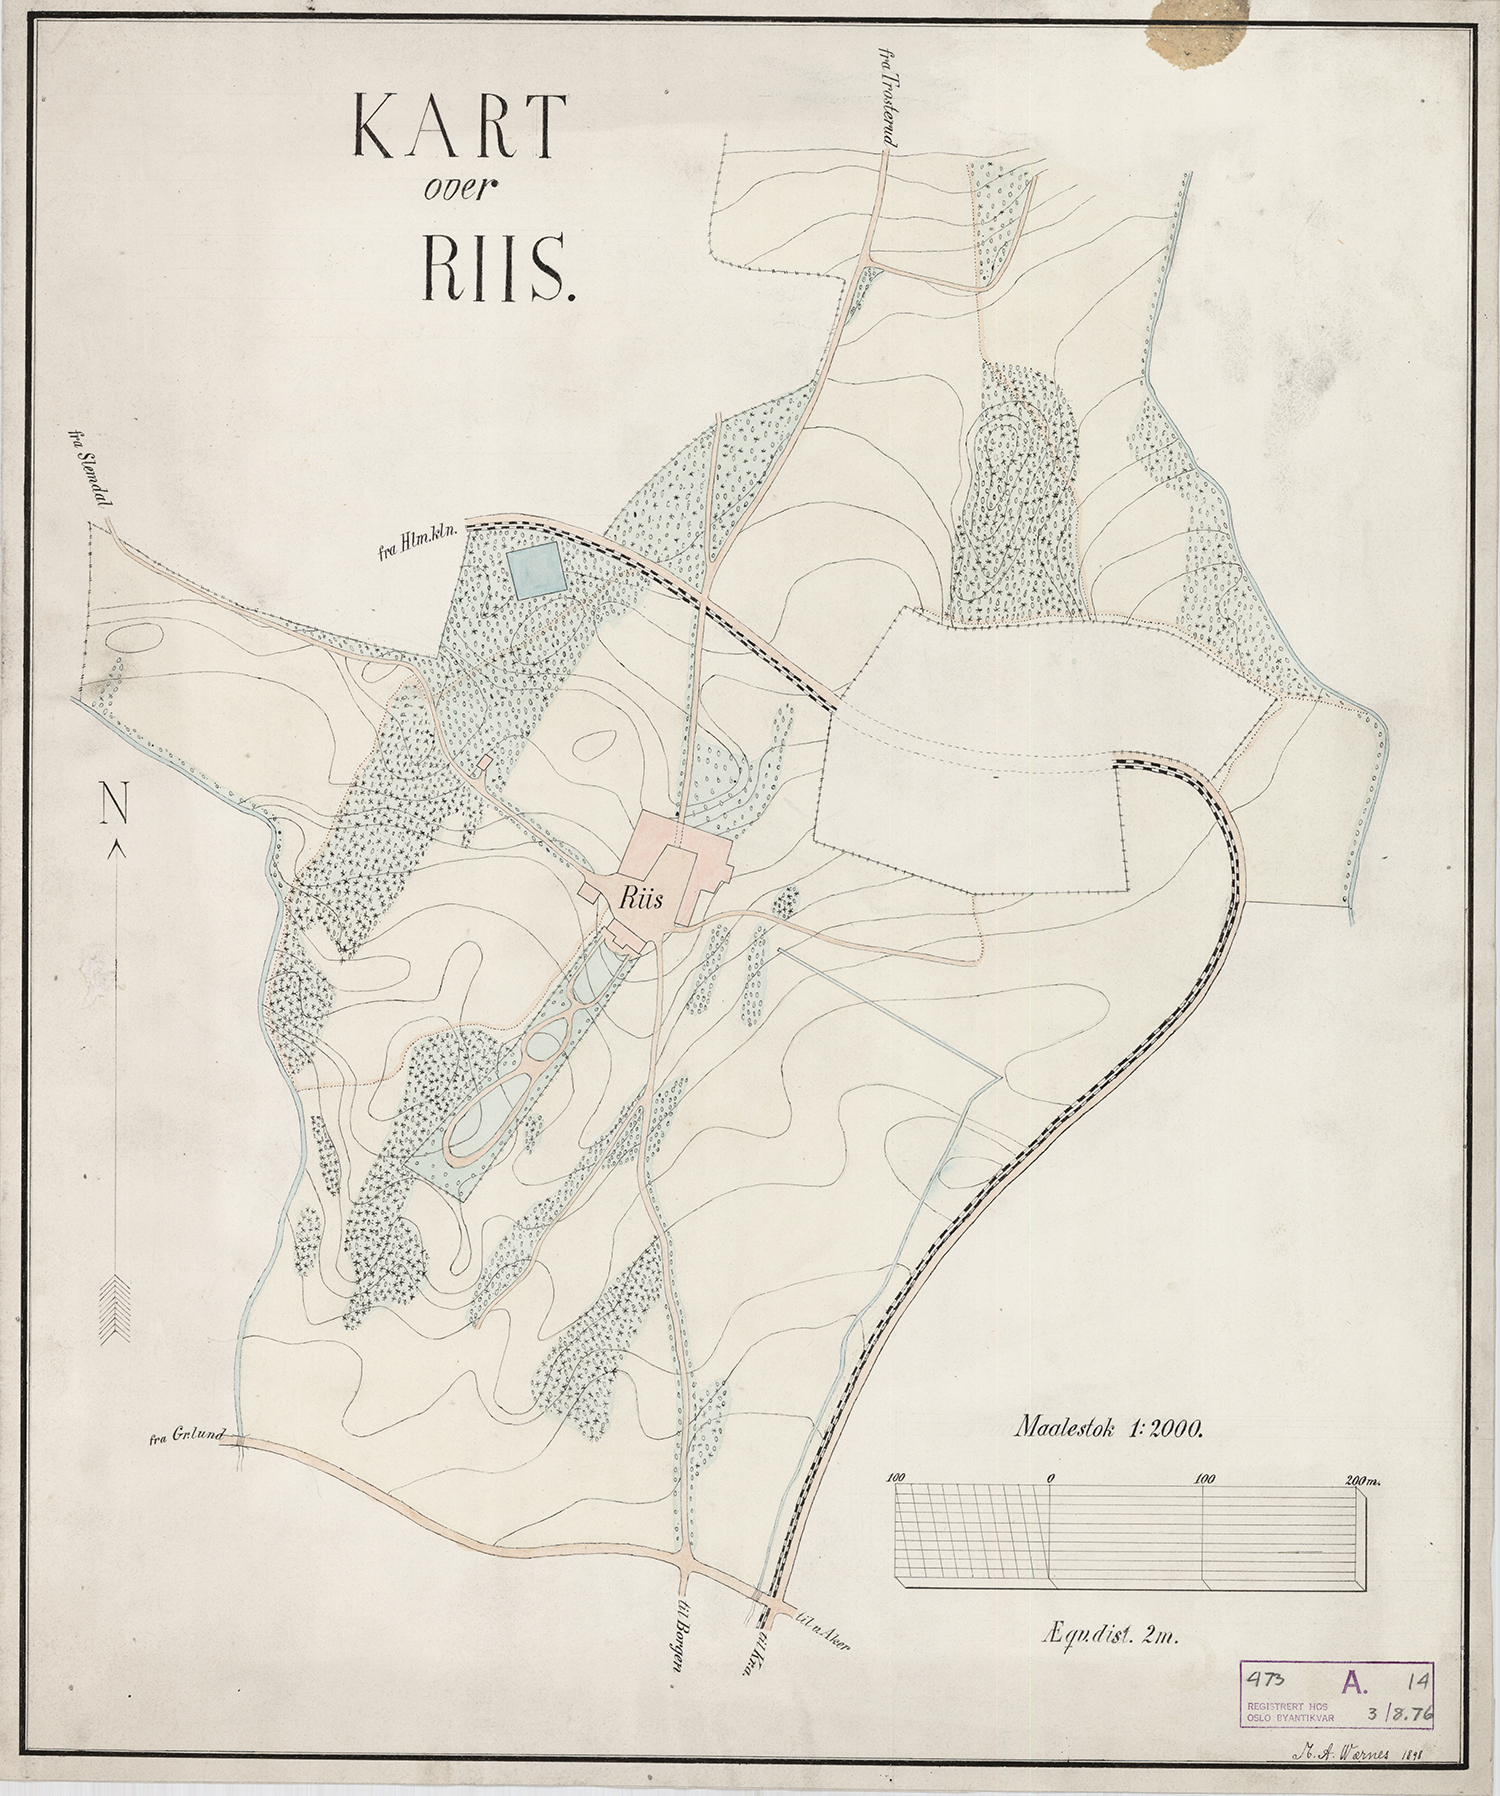 Kart over Ris gård fra 1898.